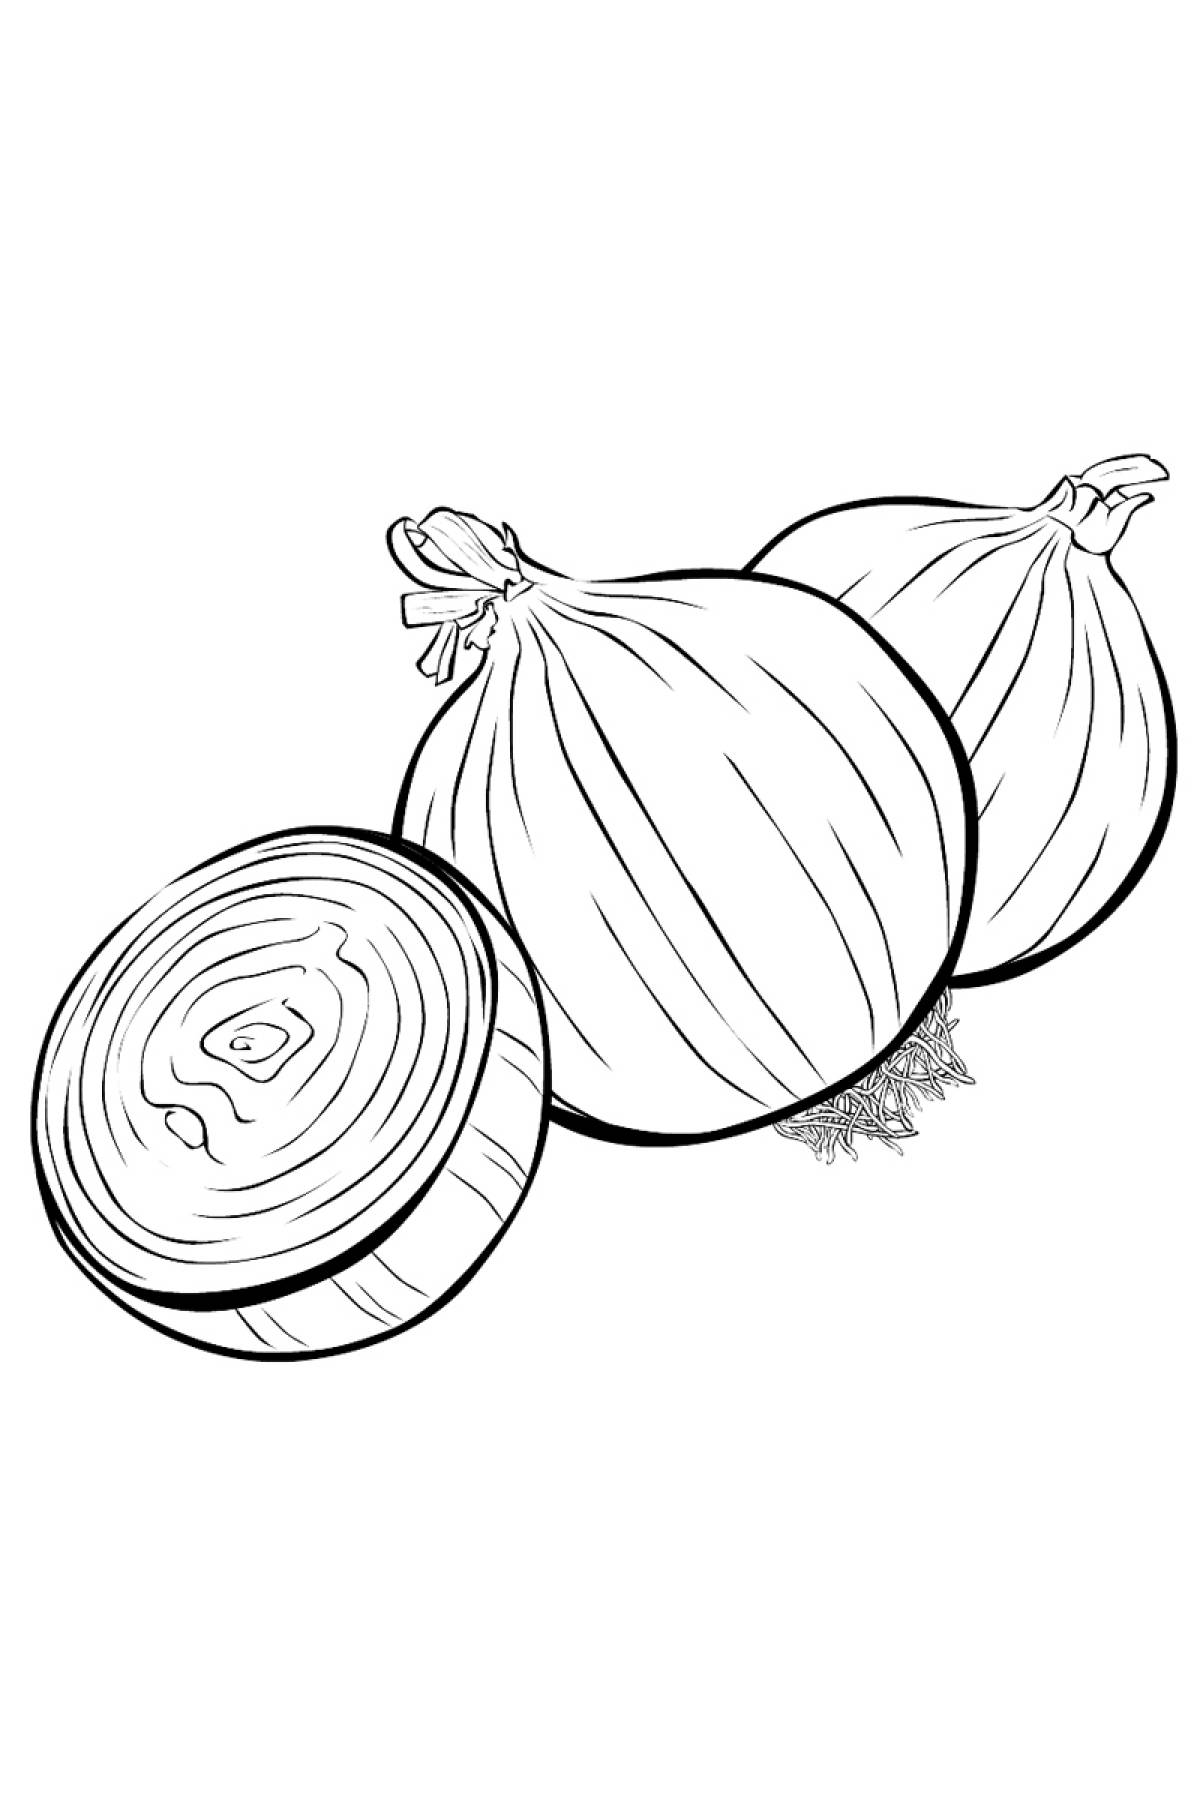 Onion cut